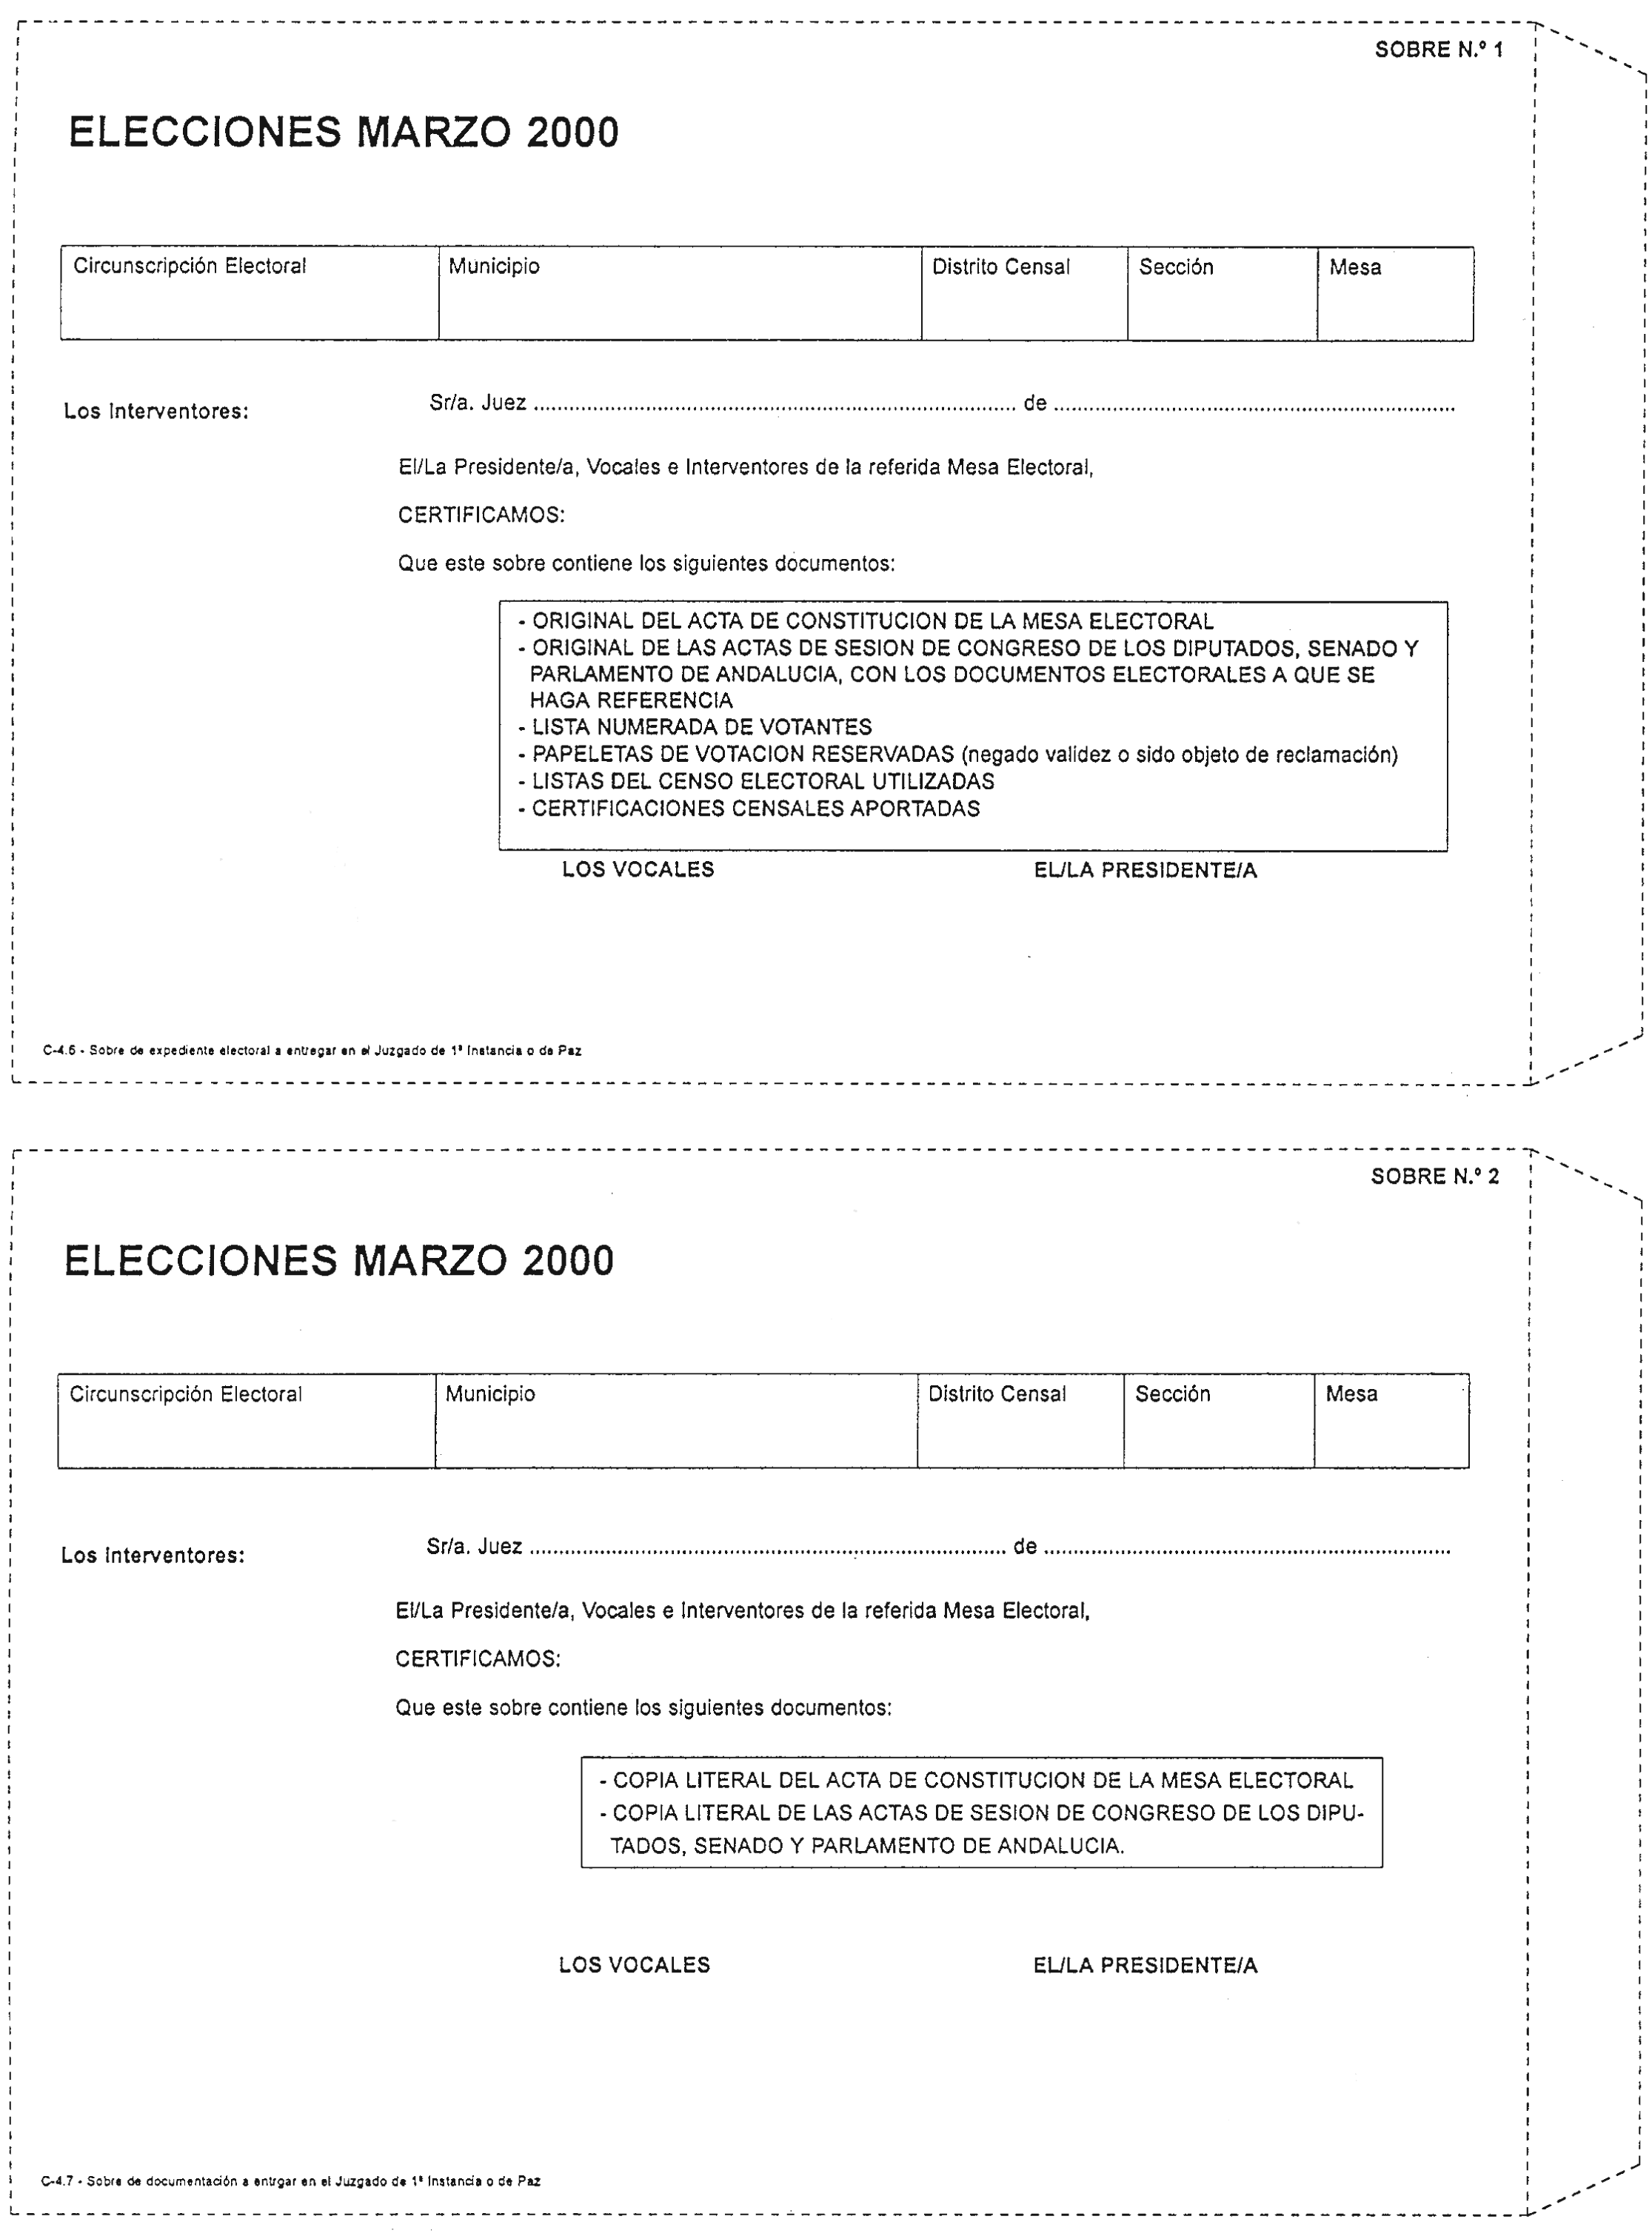 BOE-A-2000-2106 Orden de 25 de enero de 2000 por la que se determinan los  modelos de sobres e impresos comunes a utilizar en los procesos electorales  que se celebrarán el día 12